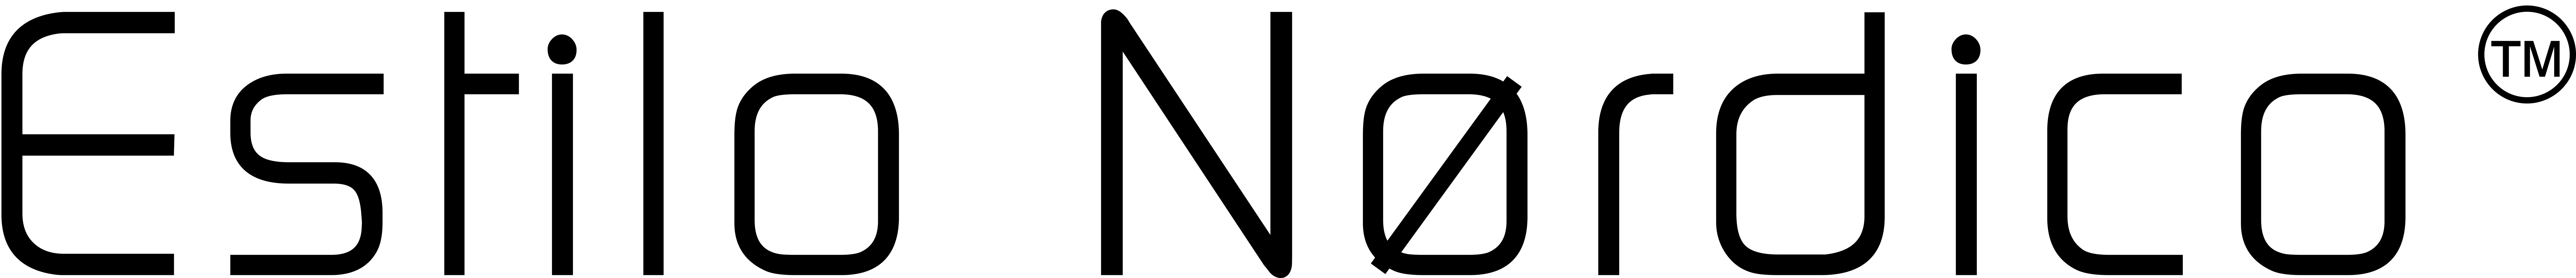 Estilo Nordico logo negro